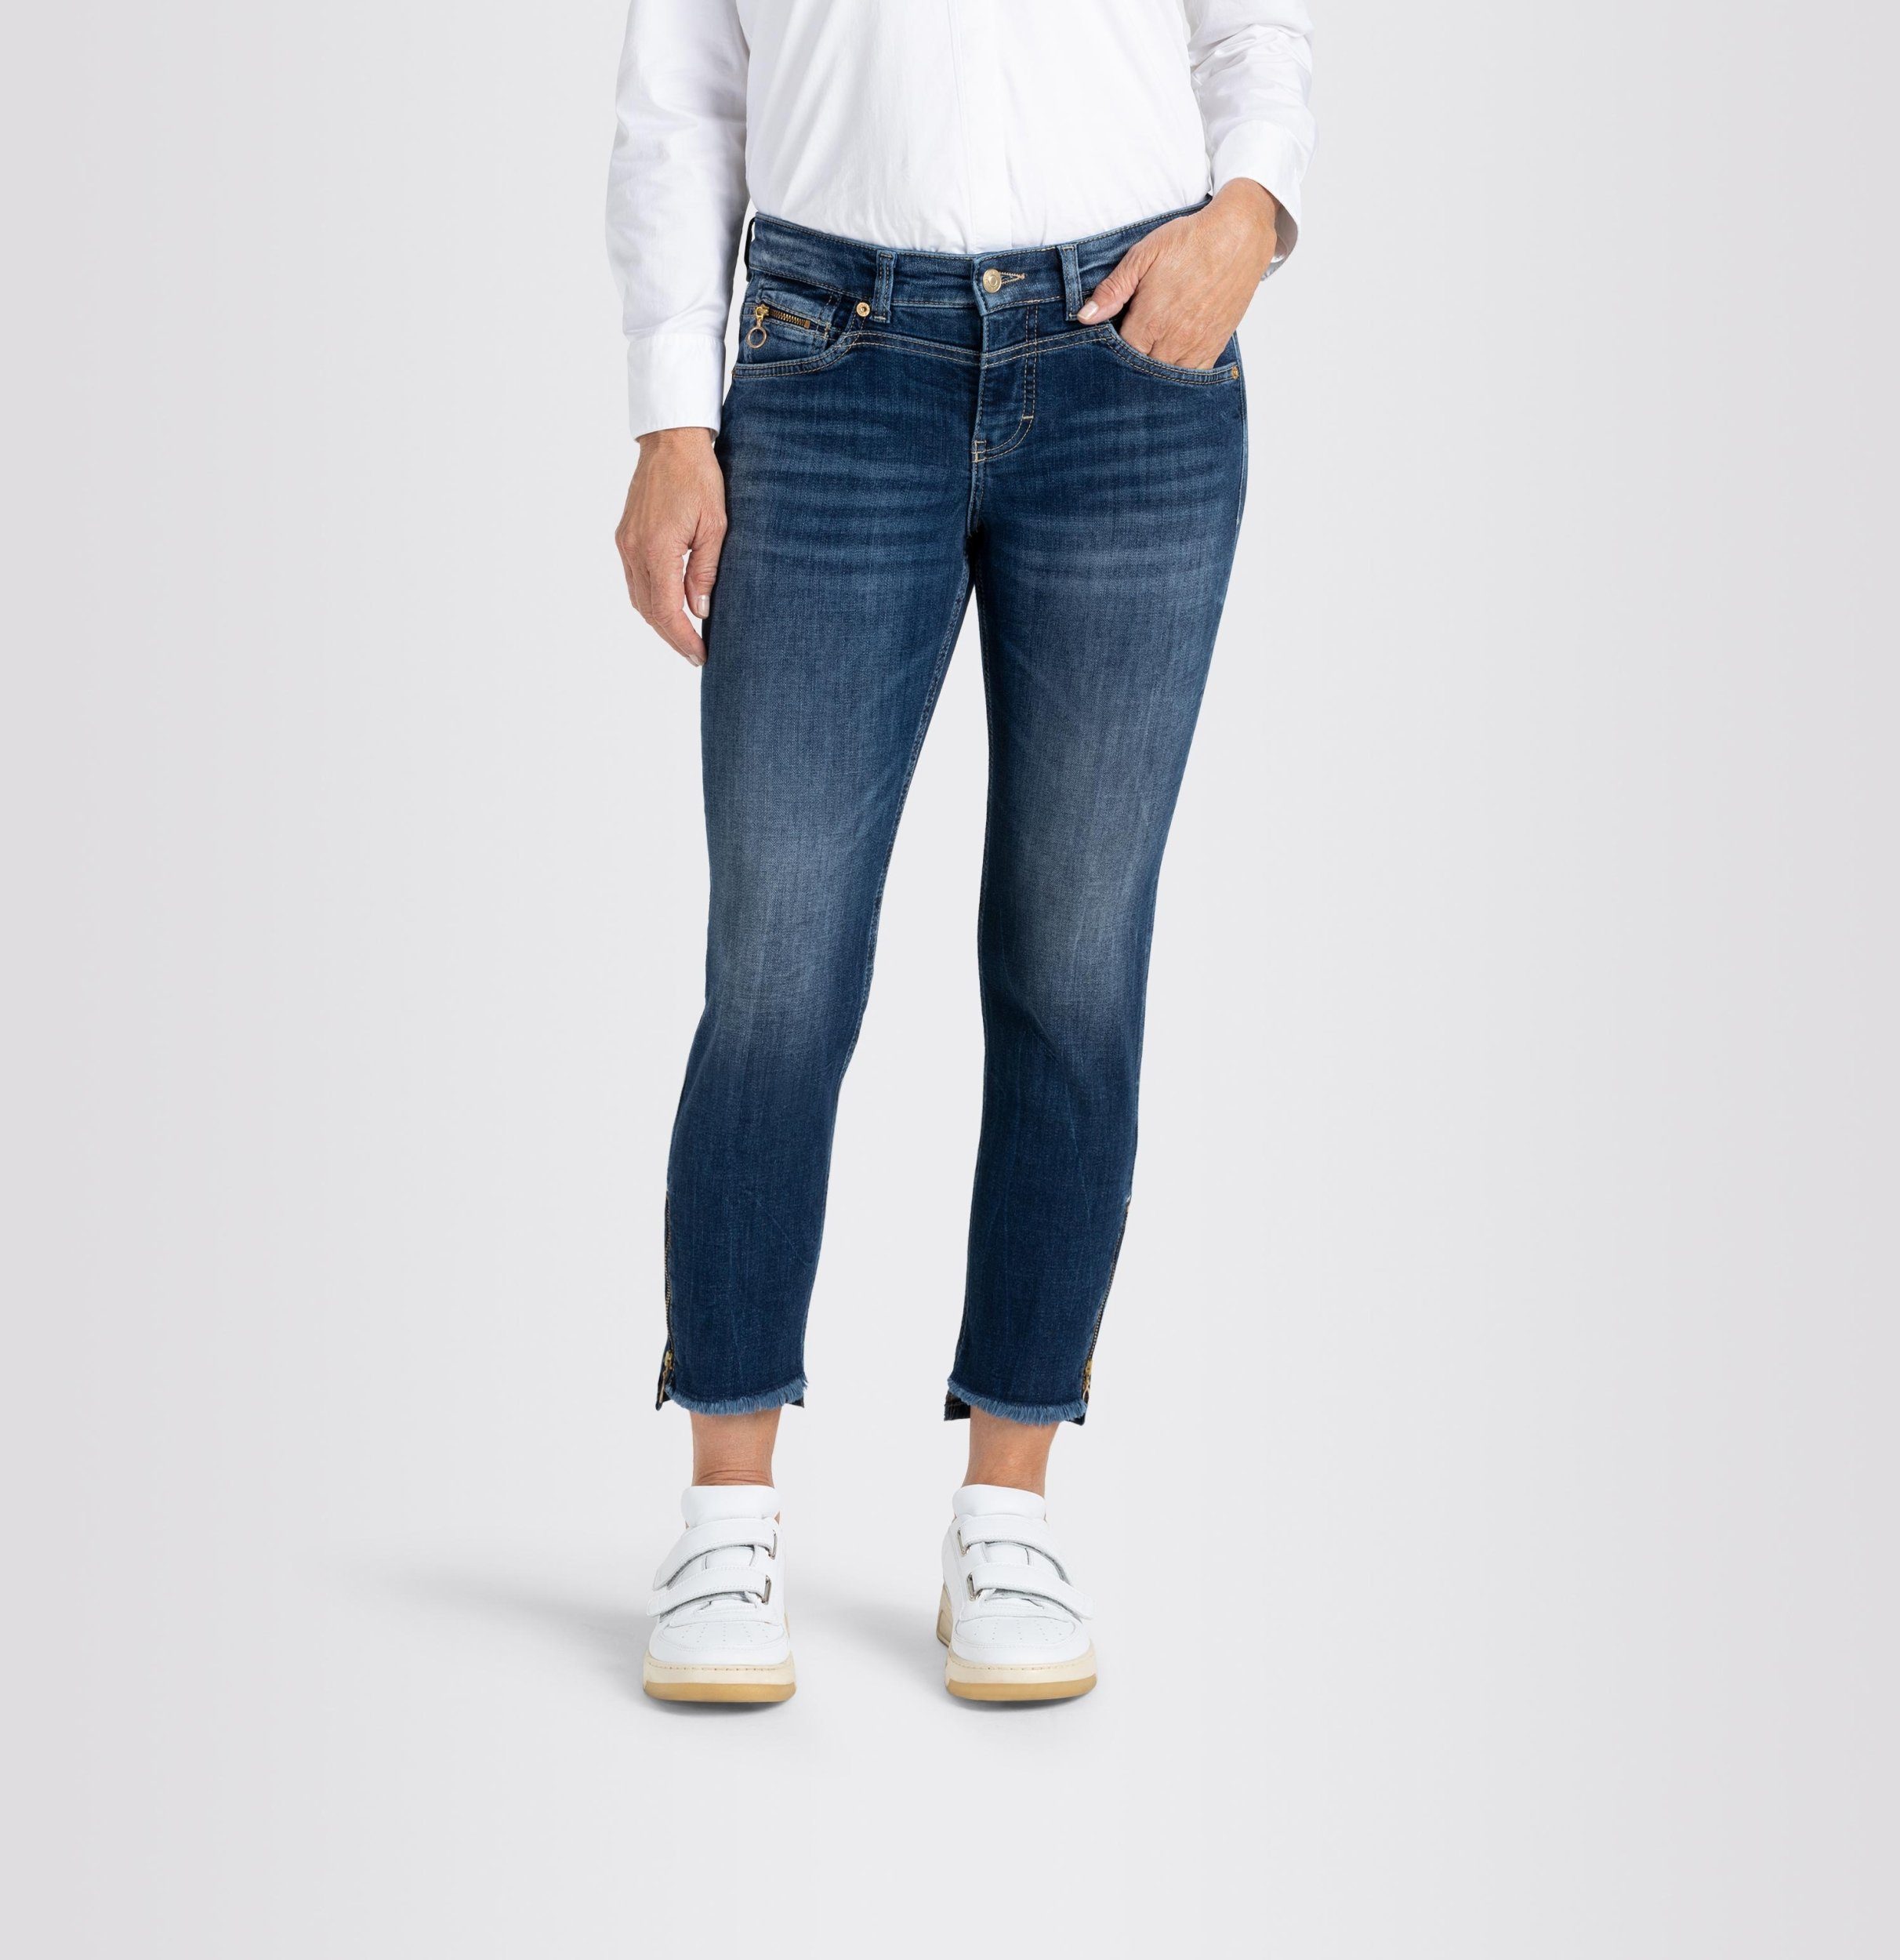 denim JEANS SLIM, Light 5-Pocket-Jeans - RICH authentic MAC